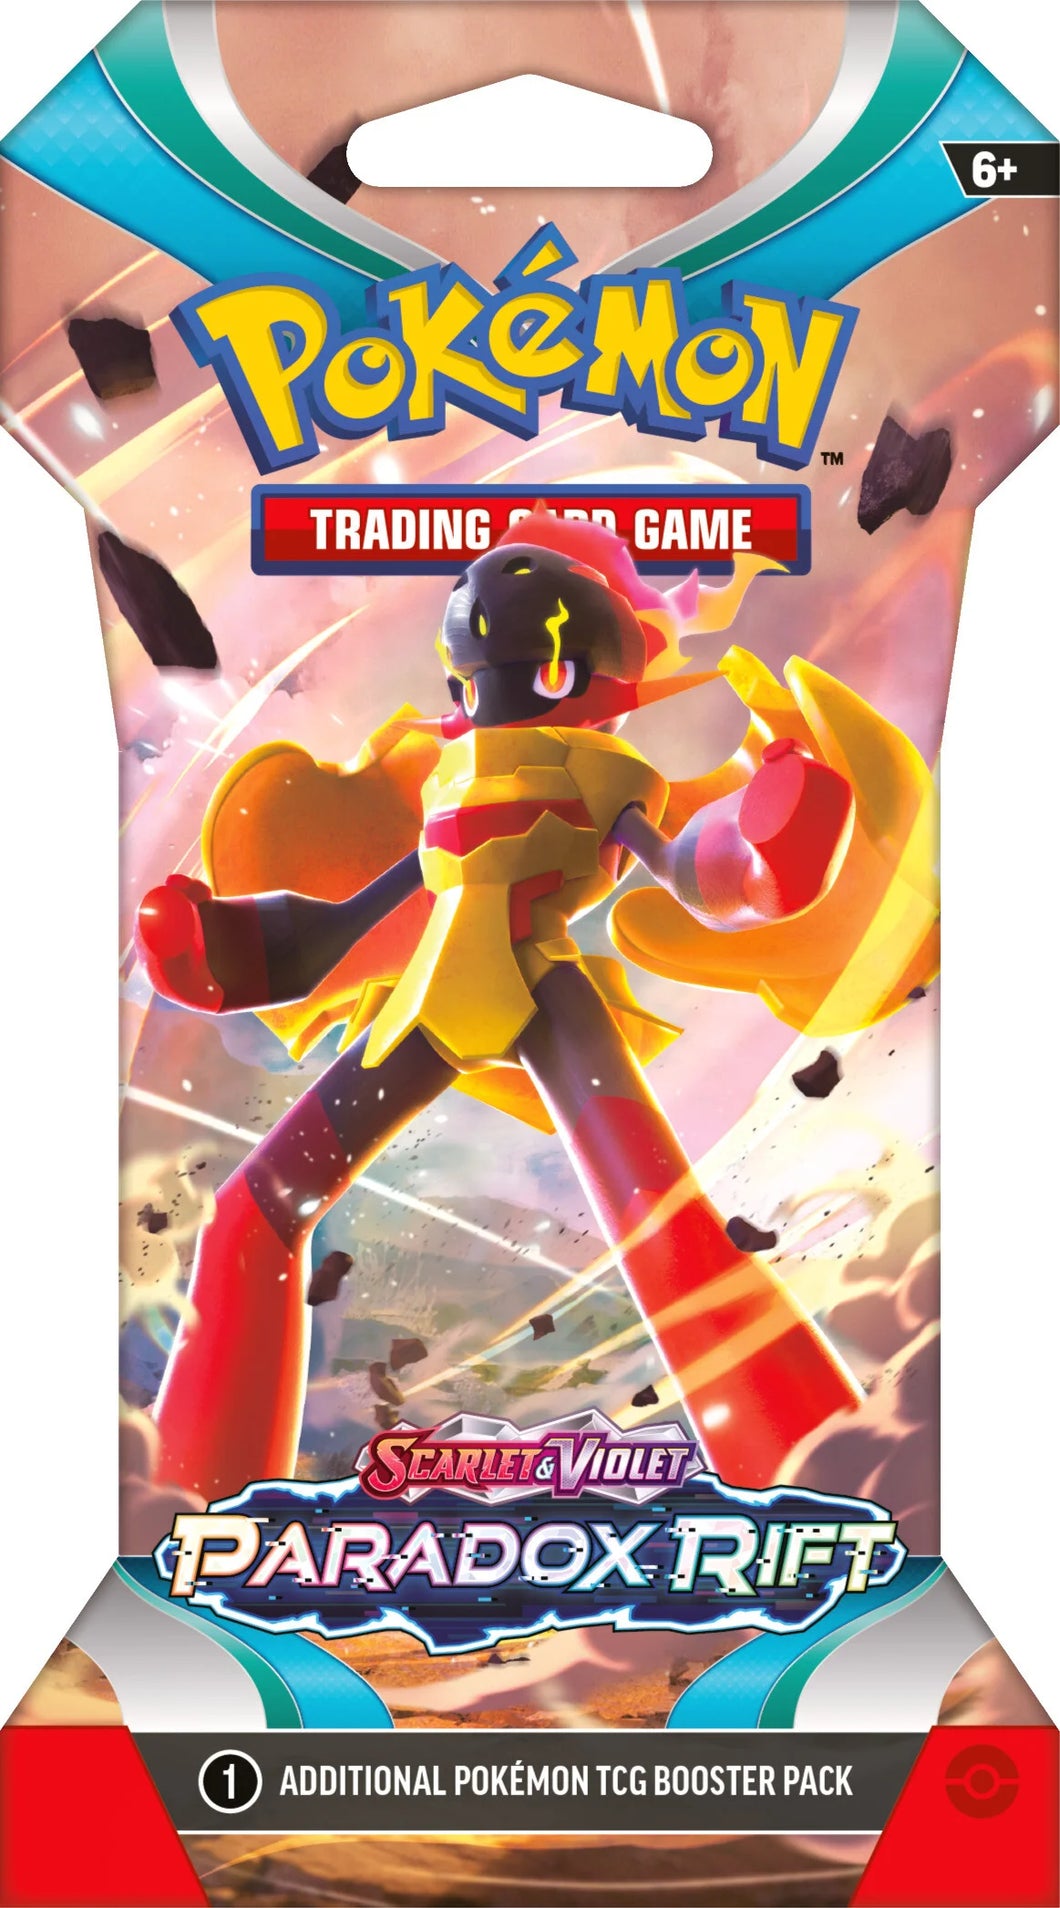 Pokémon: Scarlet & Violet - Paradox Rift - Sleeved Booster Pack